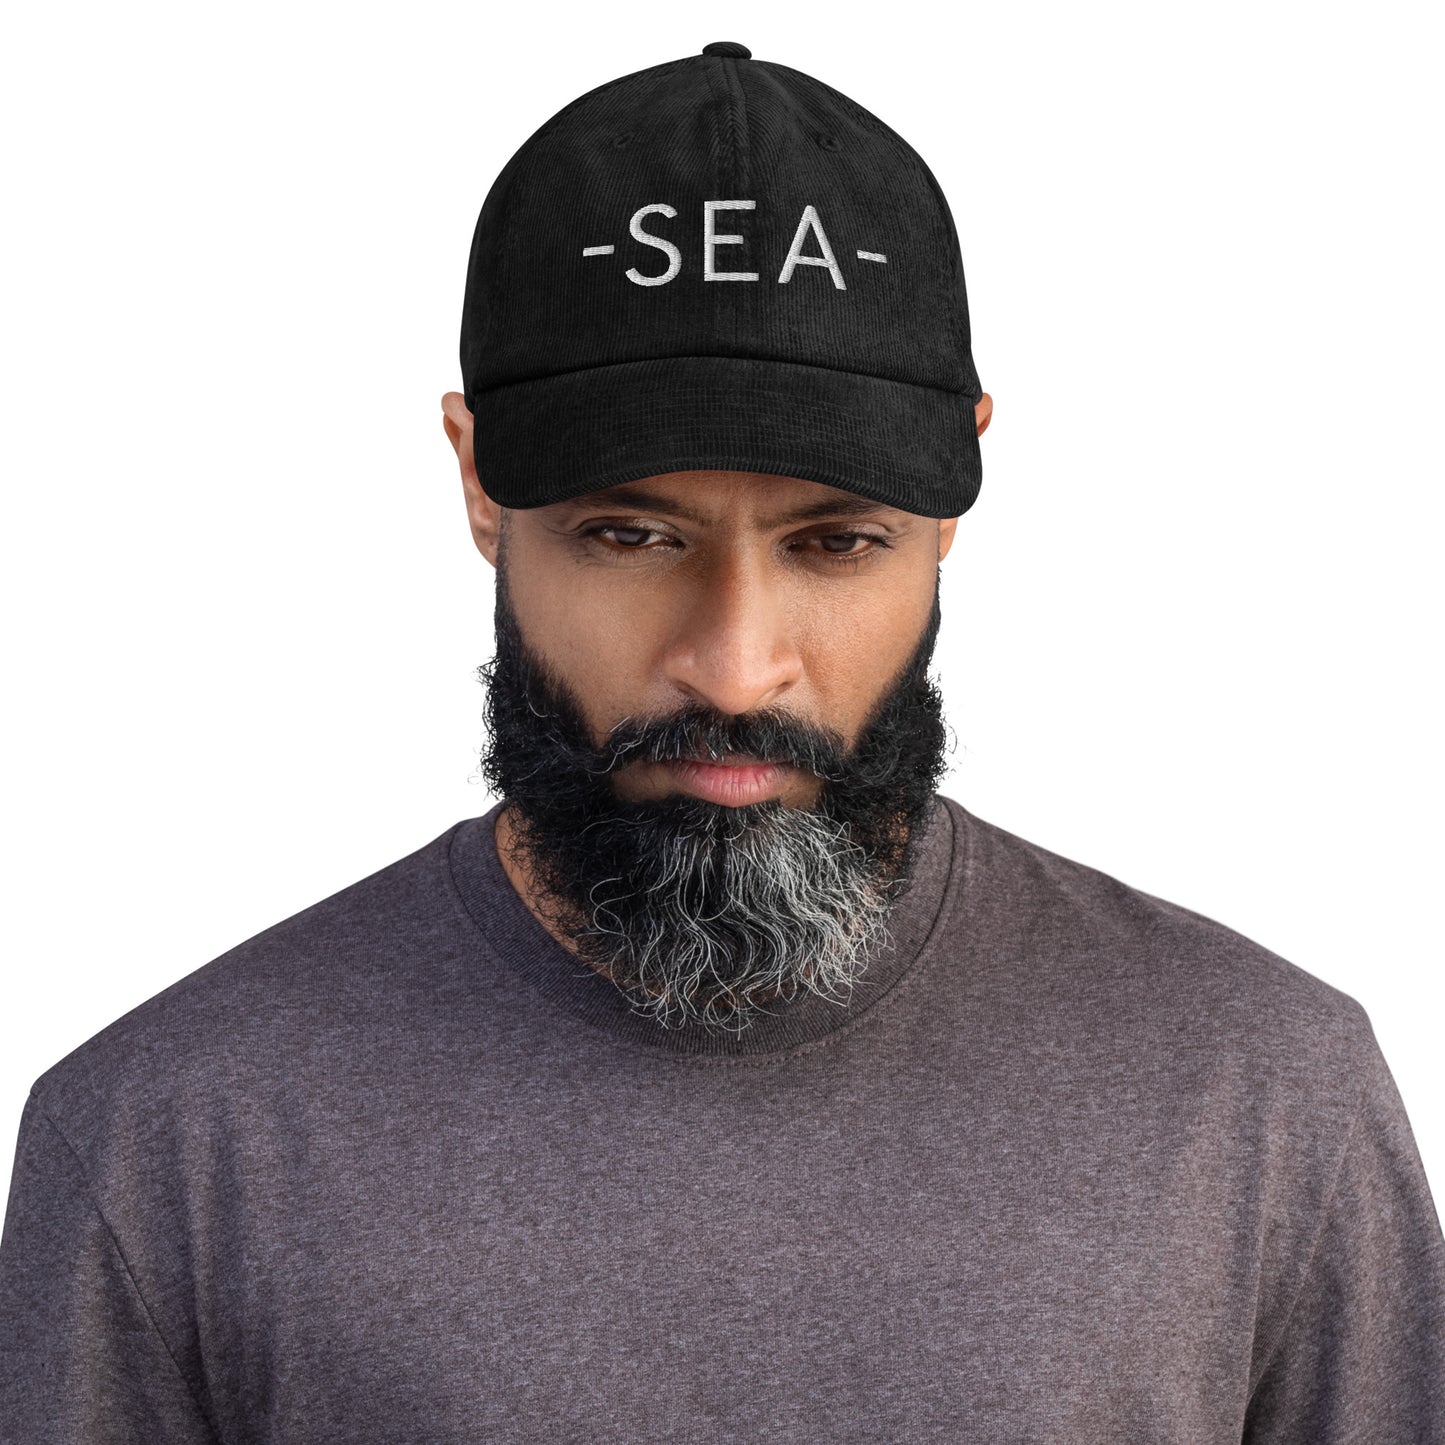 Souvenir Corduroy Hat - White • SEA Seattle • YHM Designs - Image 02